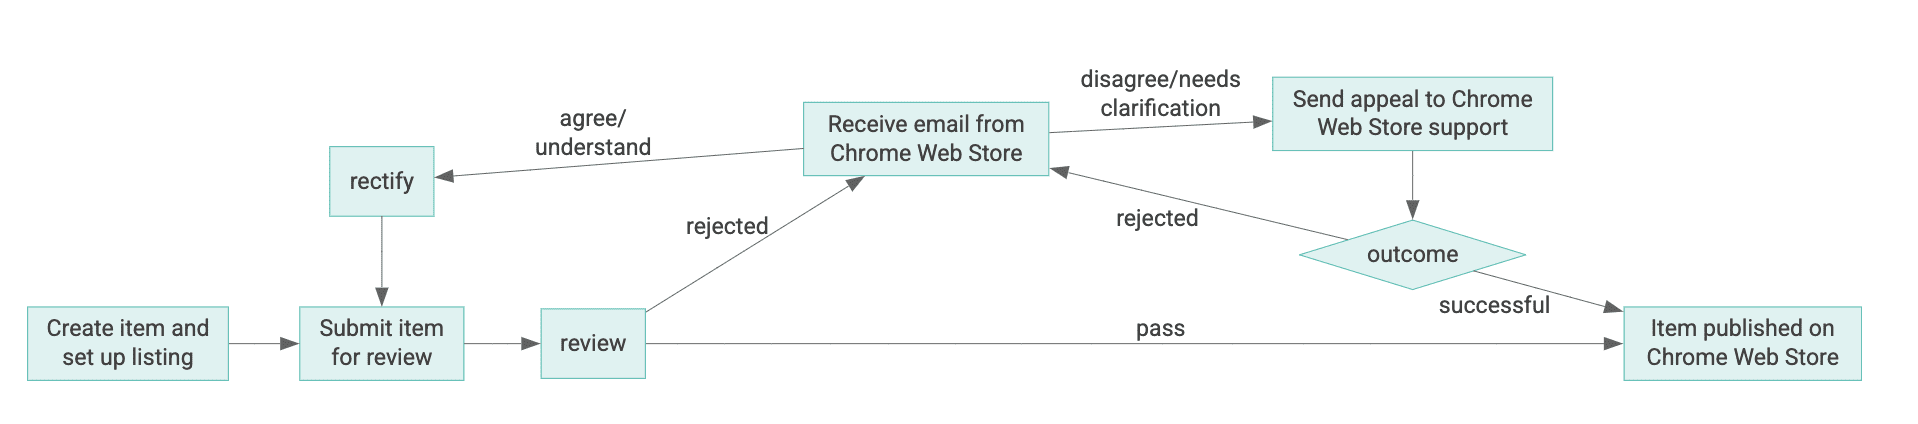 Diagrama del ciclo de vida de un elemento de Chrome Web Store